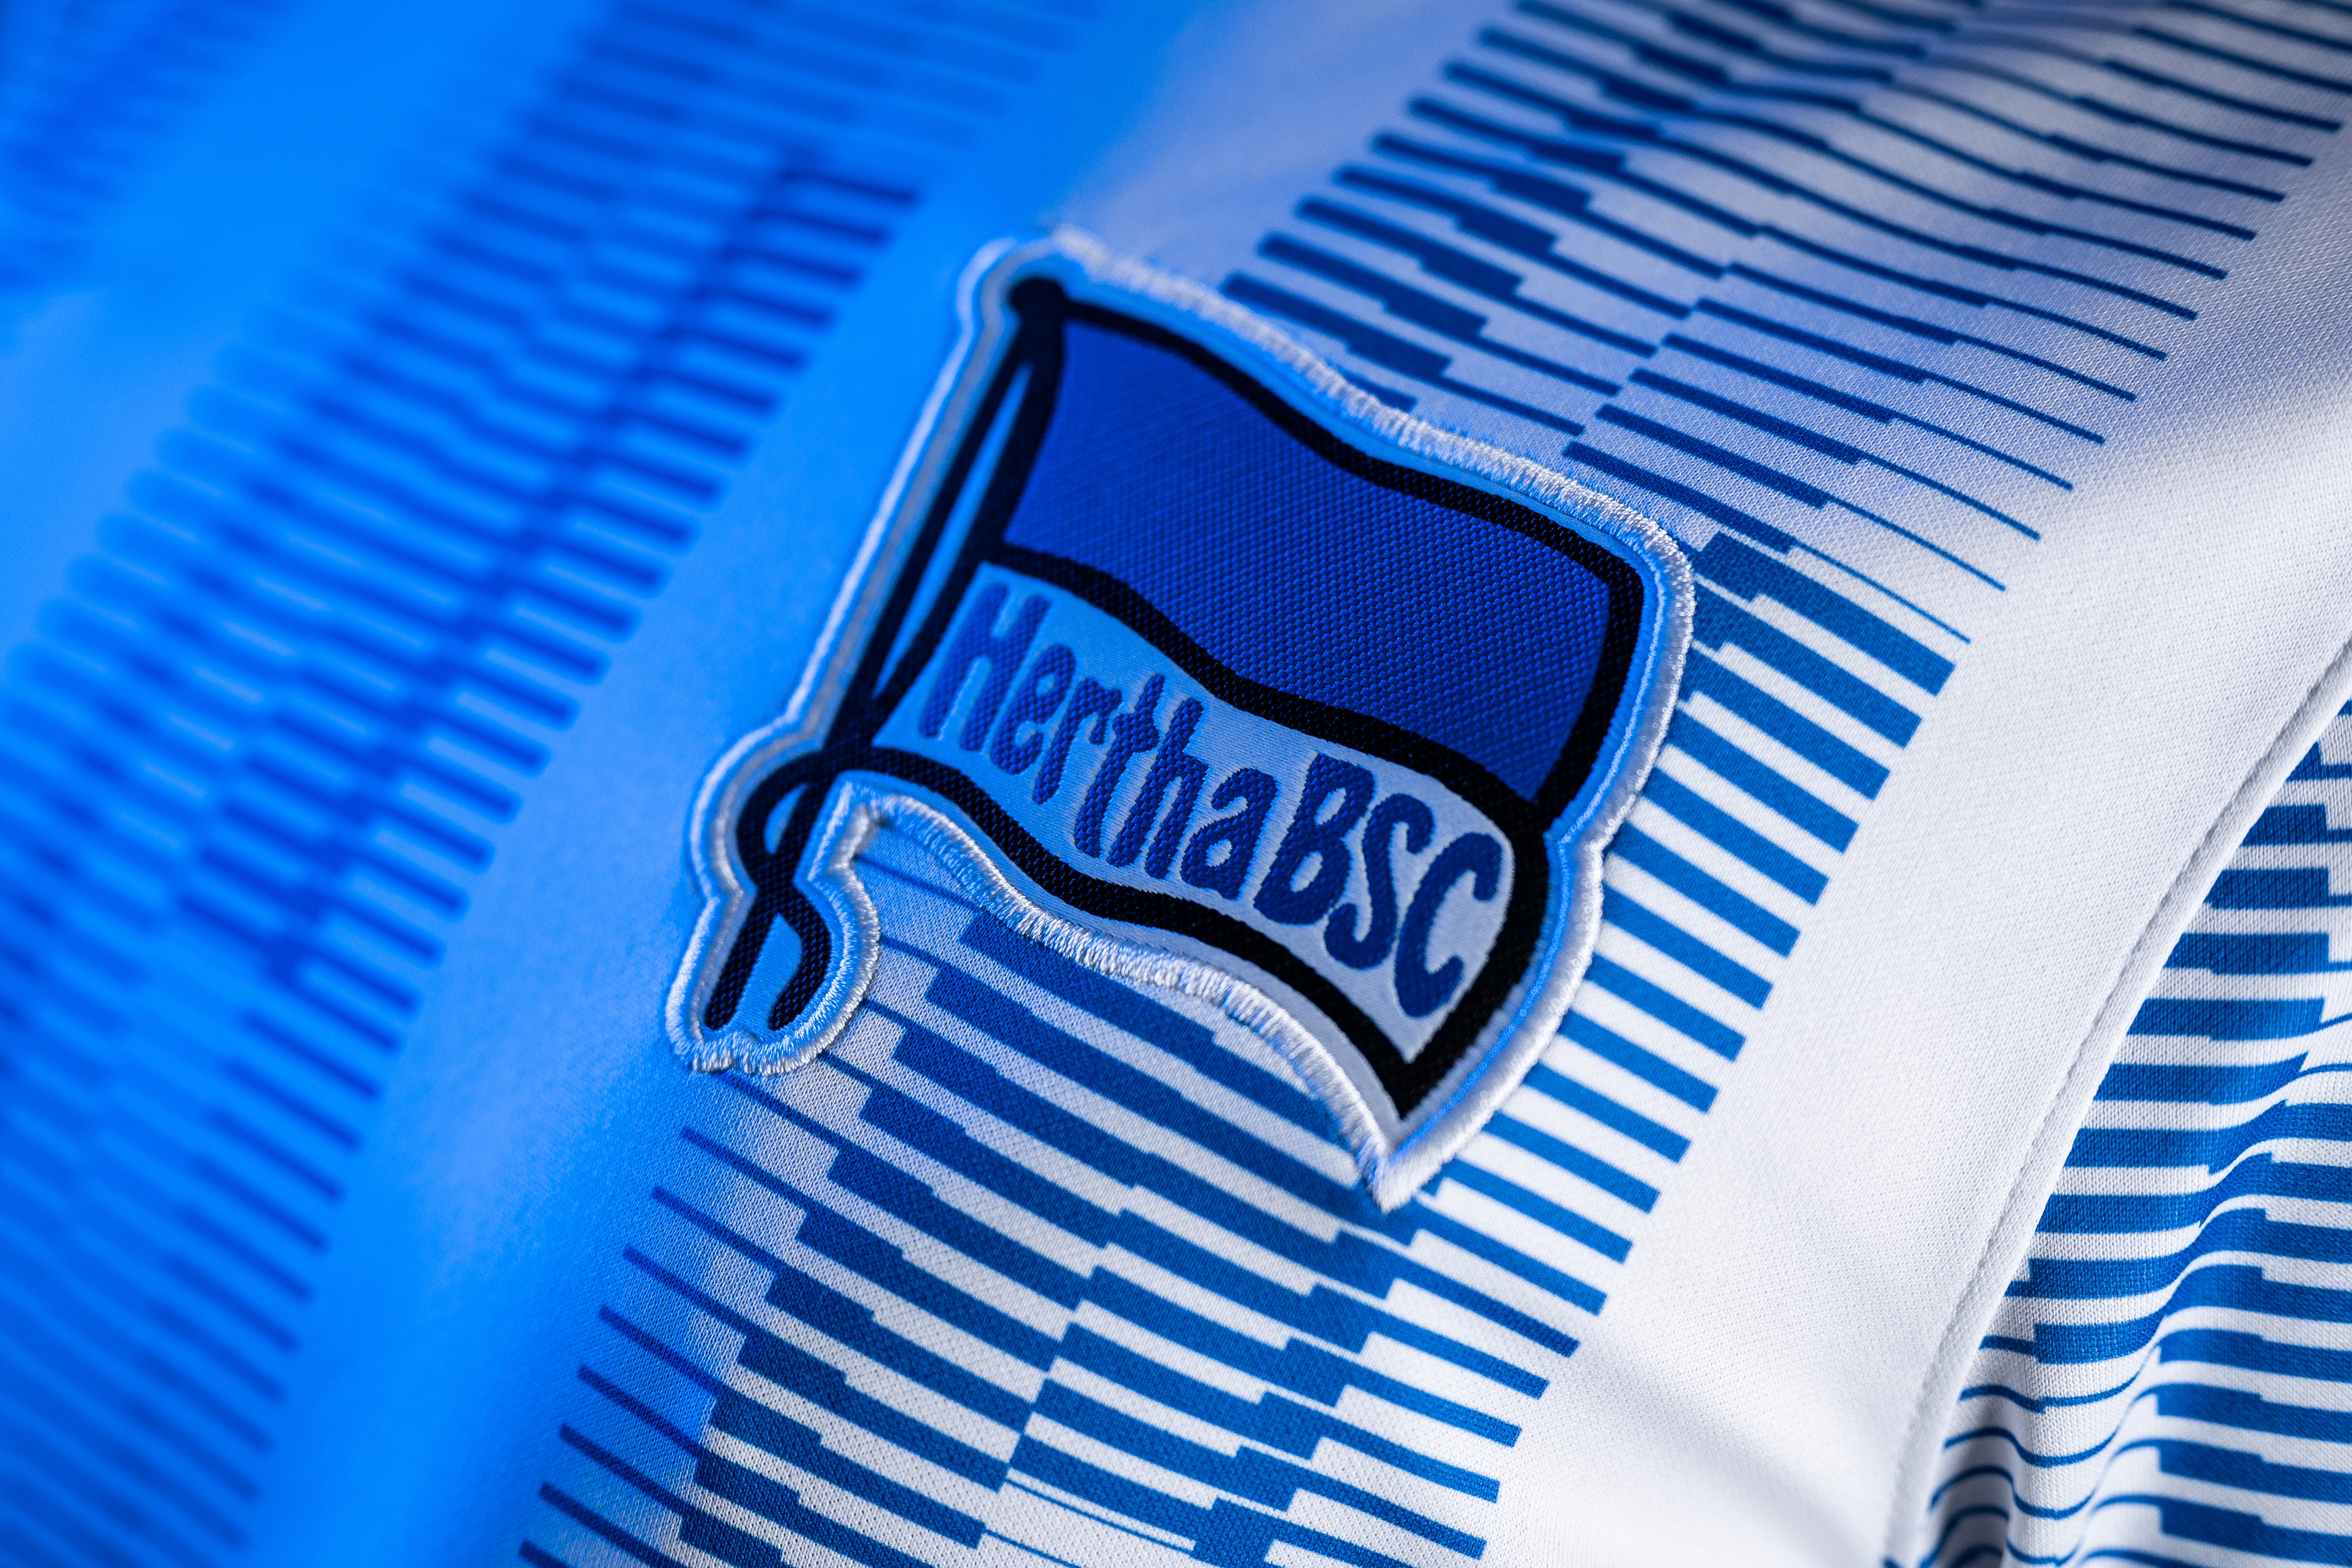 La bandera del Hertha en nuestro uniforme.